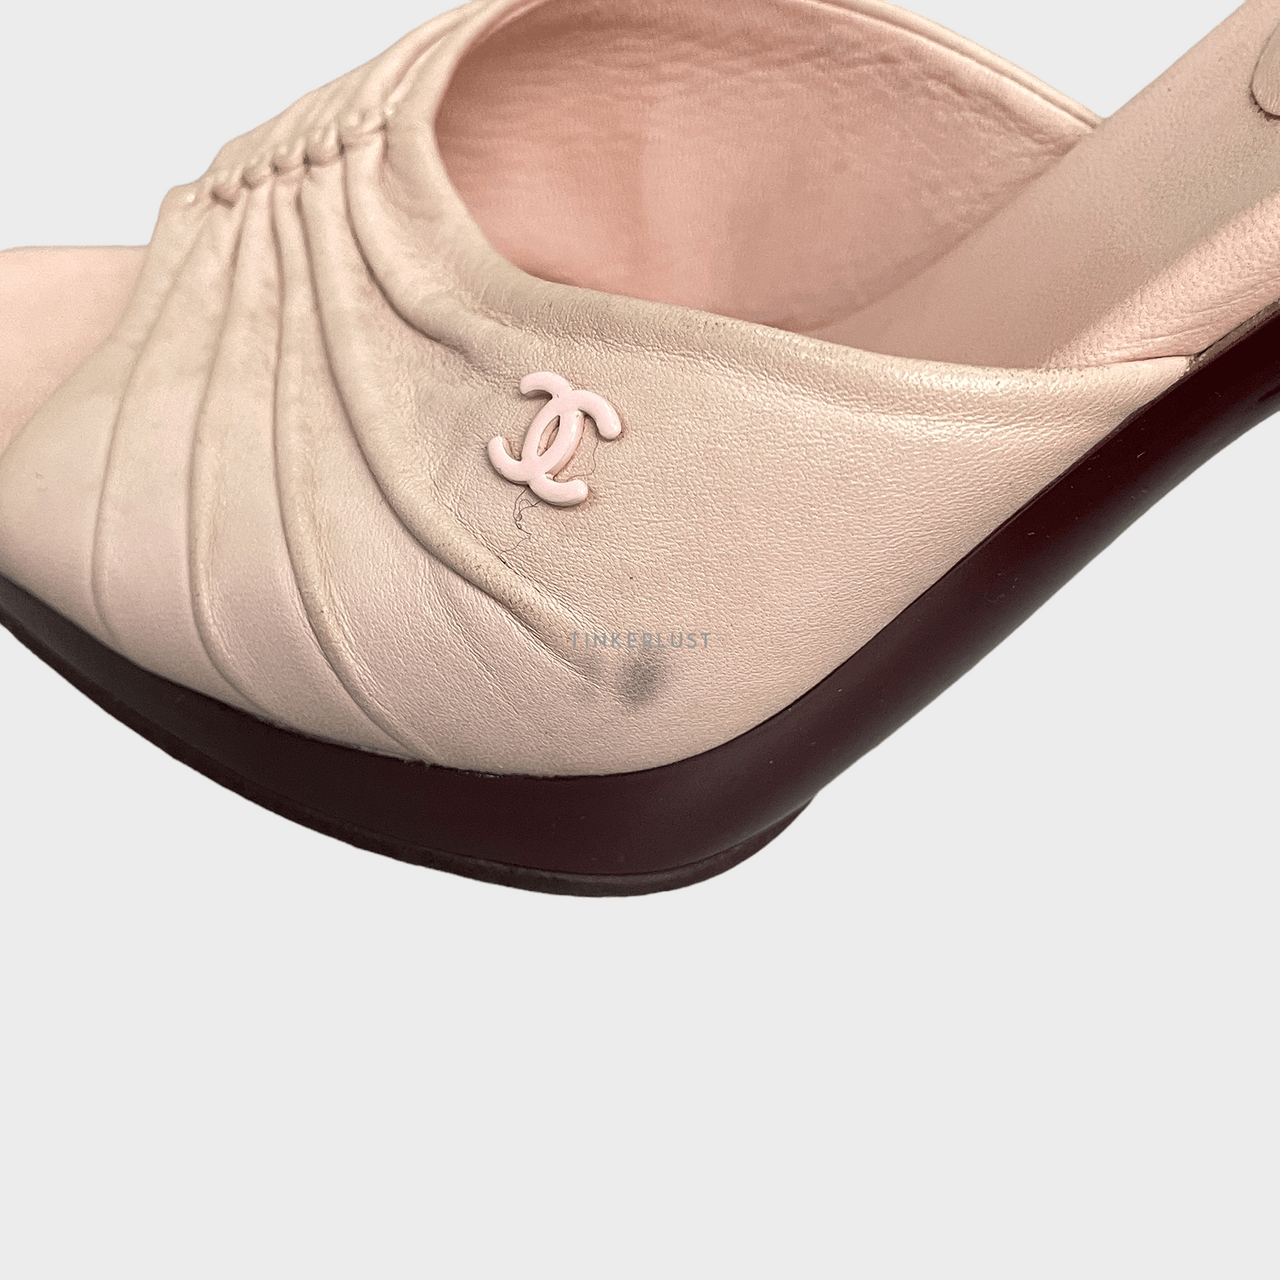 Chanel Light Pink Open Toe Heels